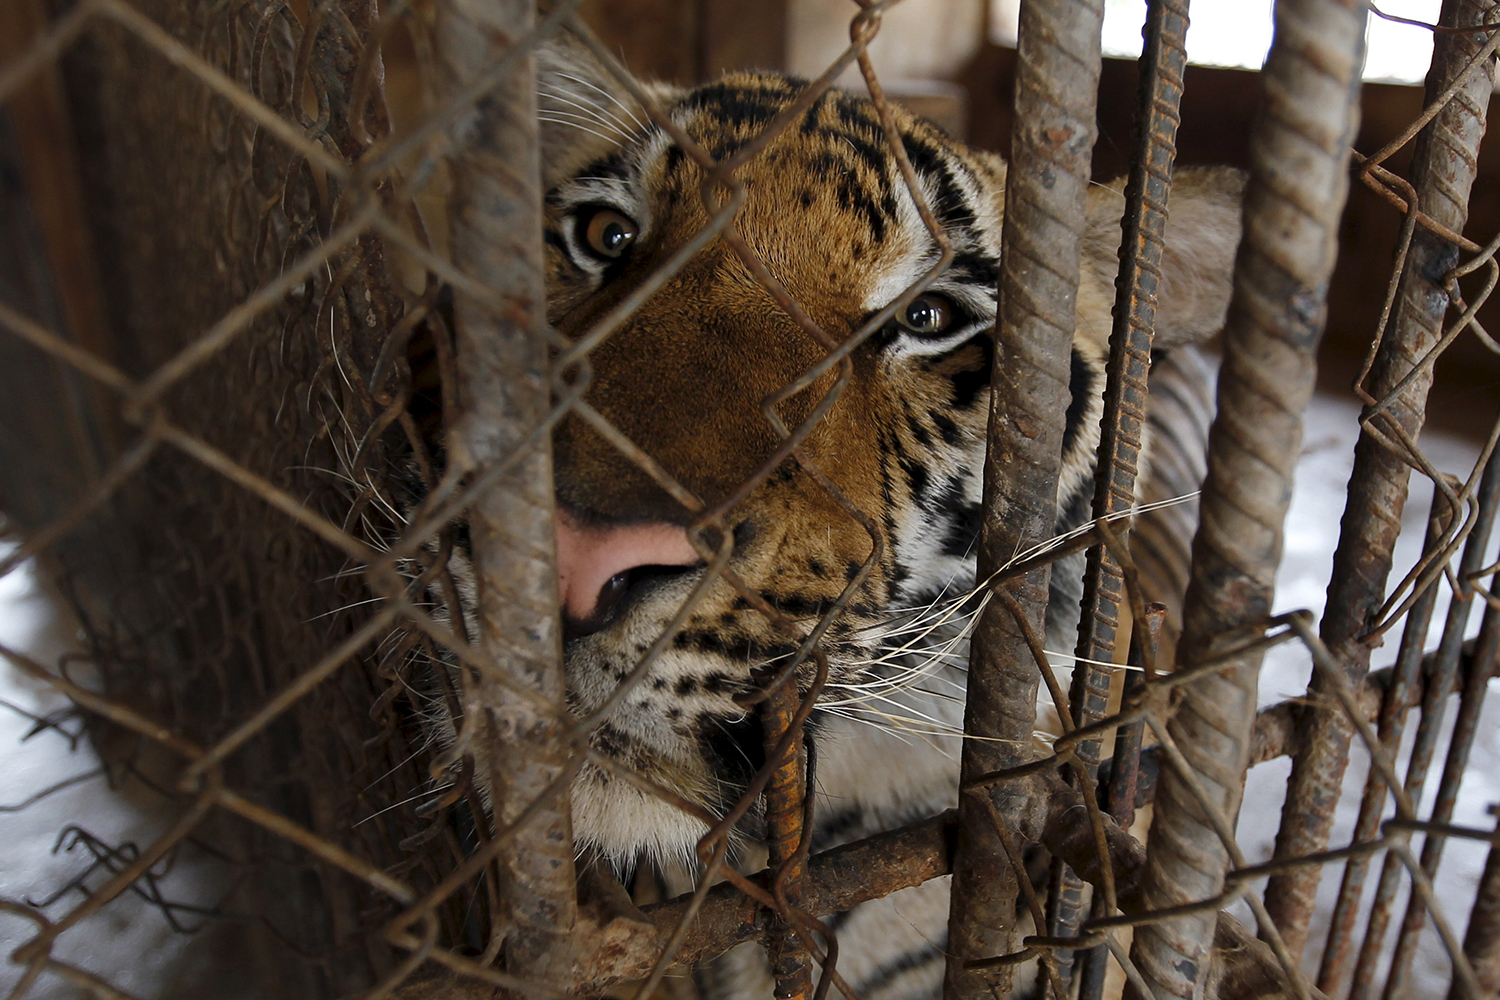 Un zoo de Noruega decapita una cebra y le da la cabeza a los tigres frente a los visitantes